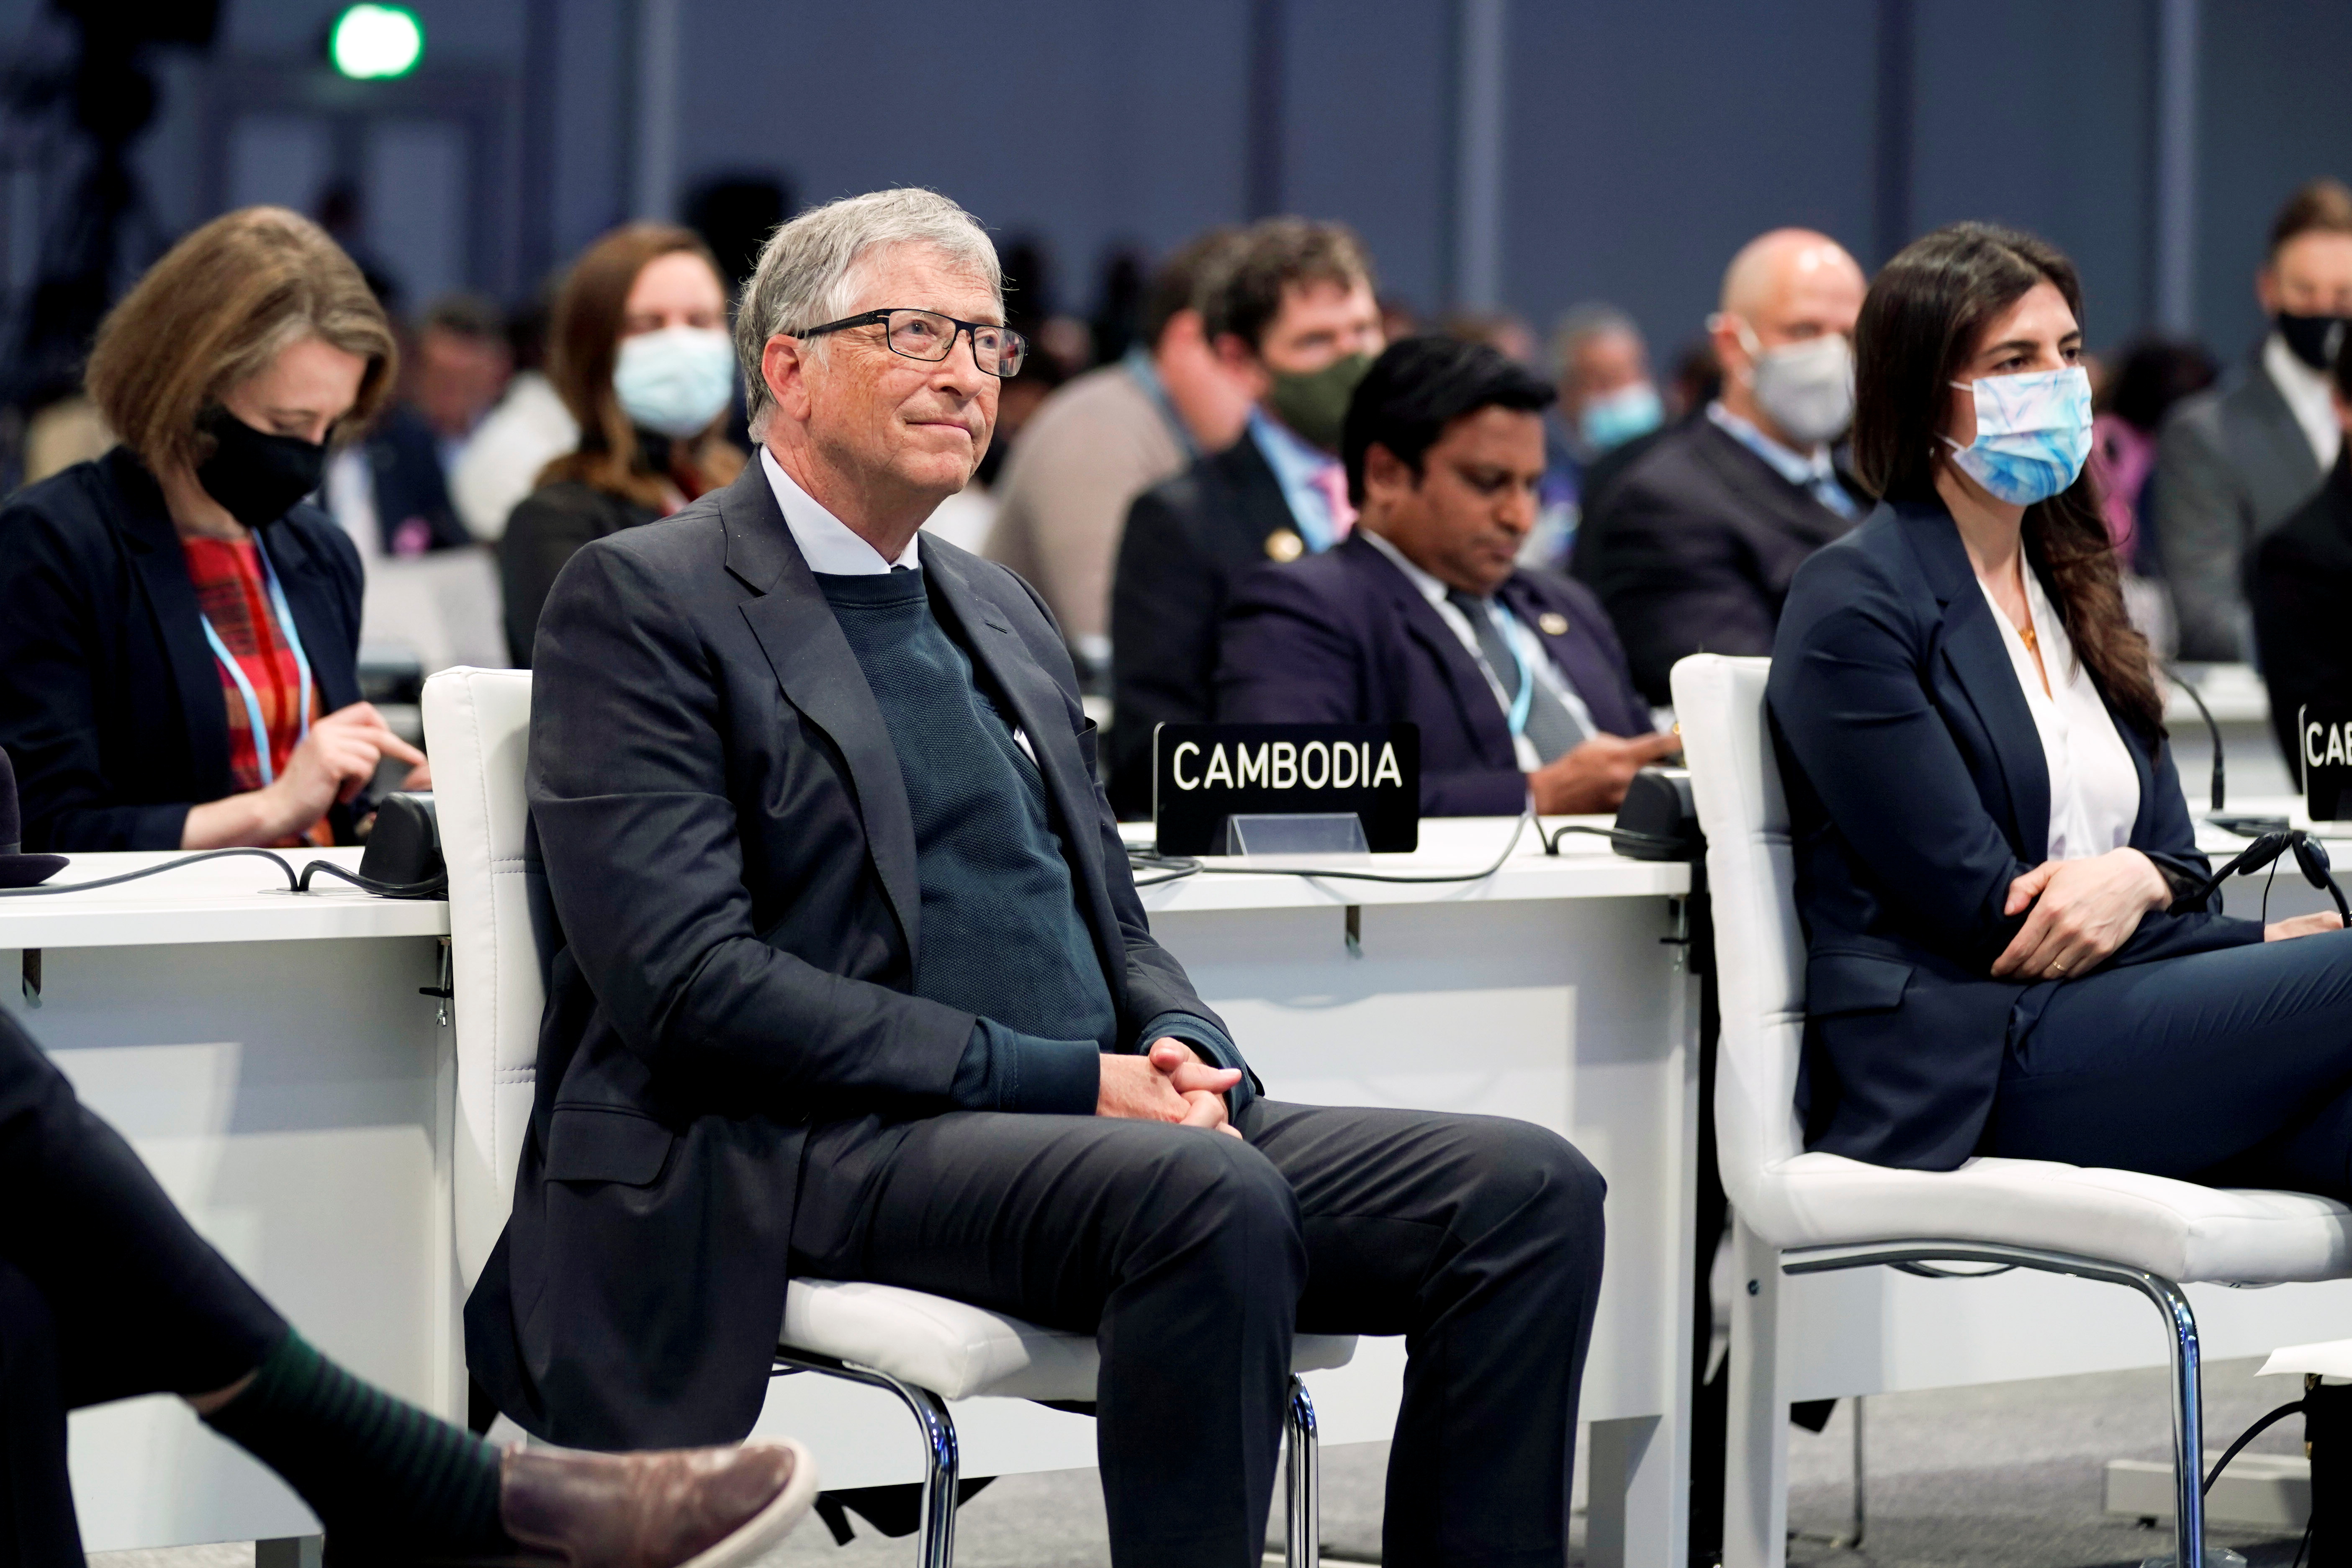 El empresario estadounidense Bill Gates escucha durante el evento "Acelerar la innovación y el despliegue de tecnologías limpias" durante la Conferencia de las Naciones Unidas sobre el Cambio Climático (COP26) en Glasgow, Escocia, Gran Bretaña, el 2 de noviembre de 2021. Evan Vucci/Pool via REUTERS